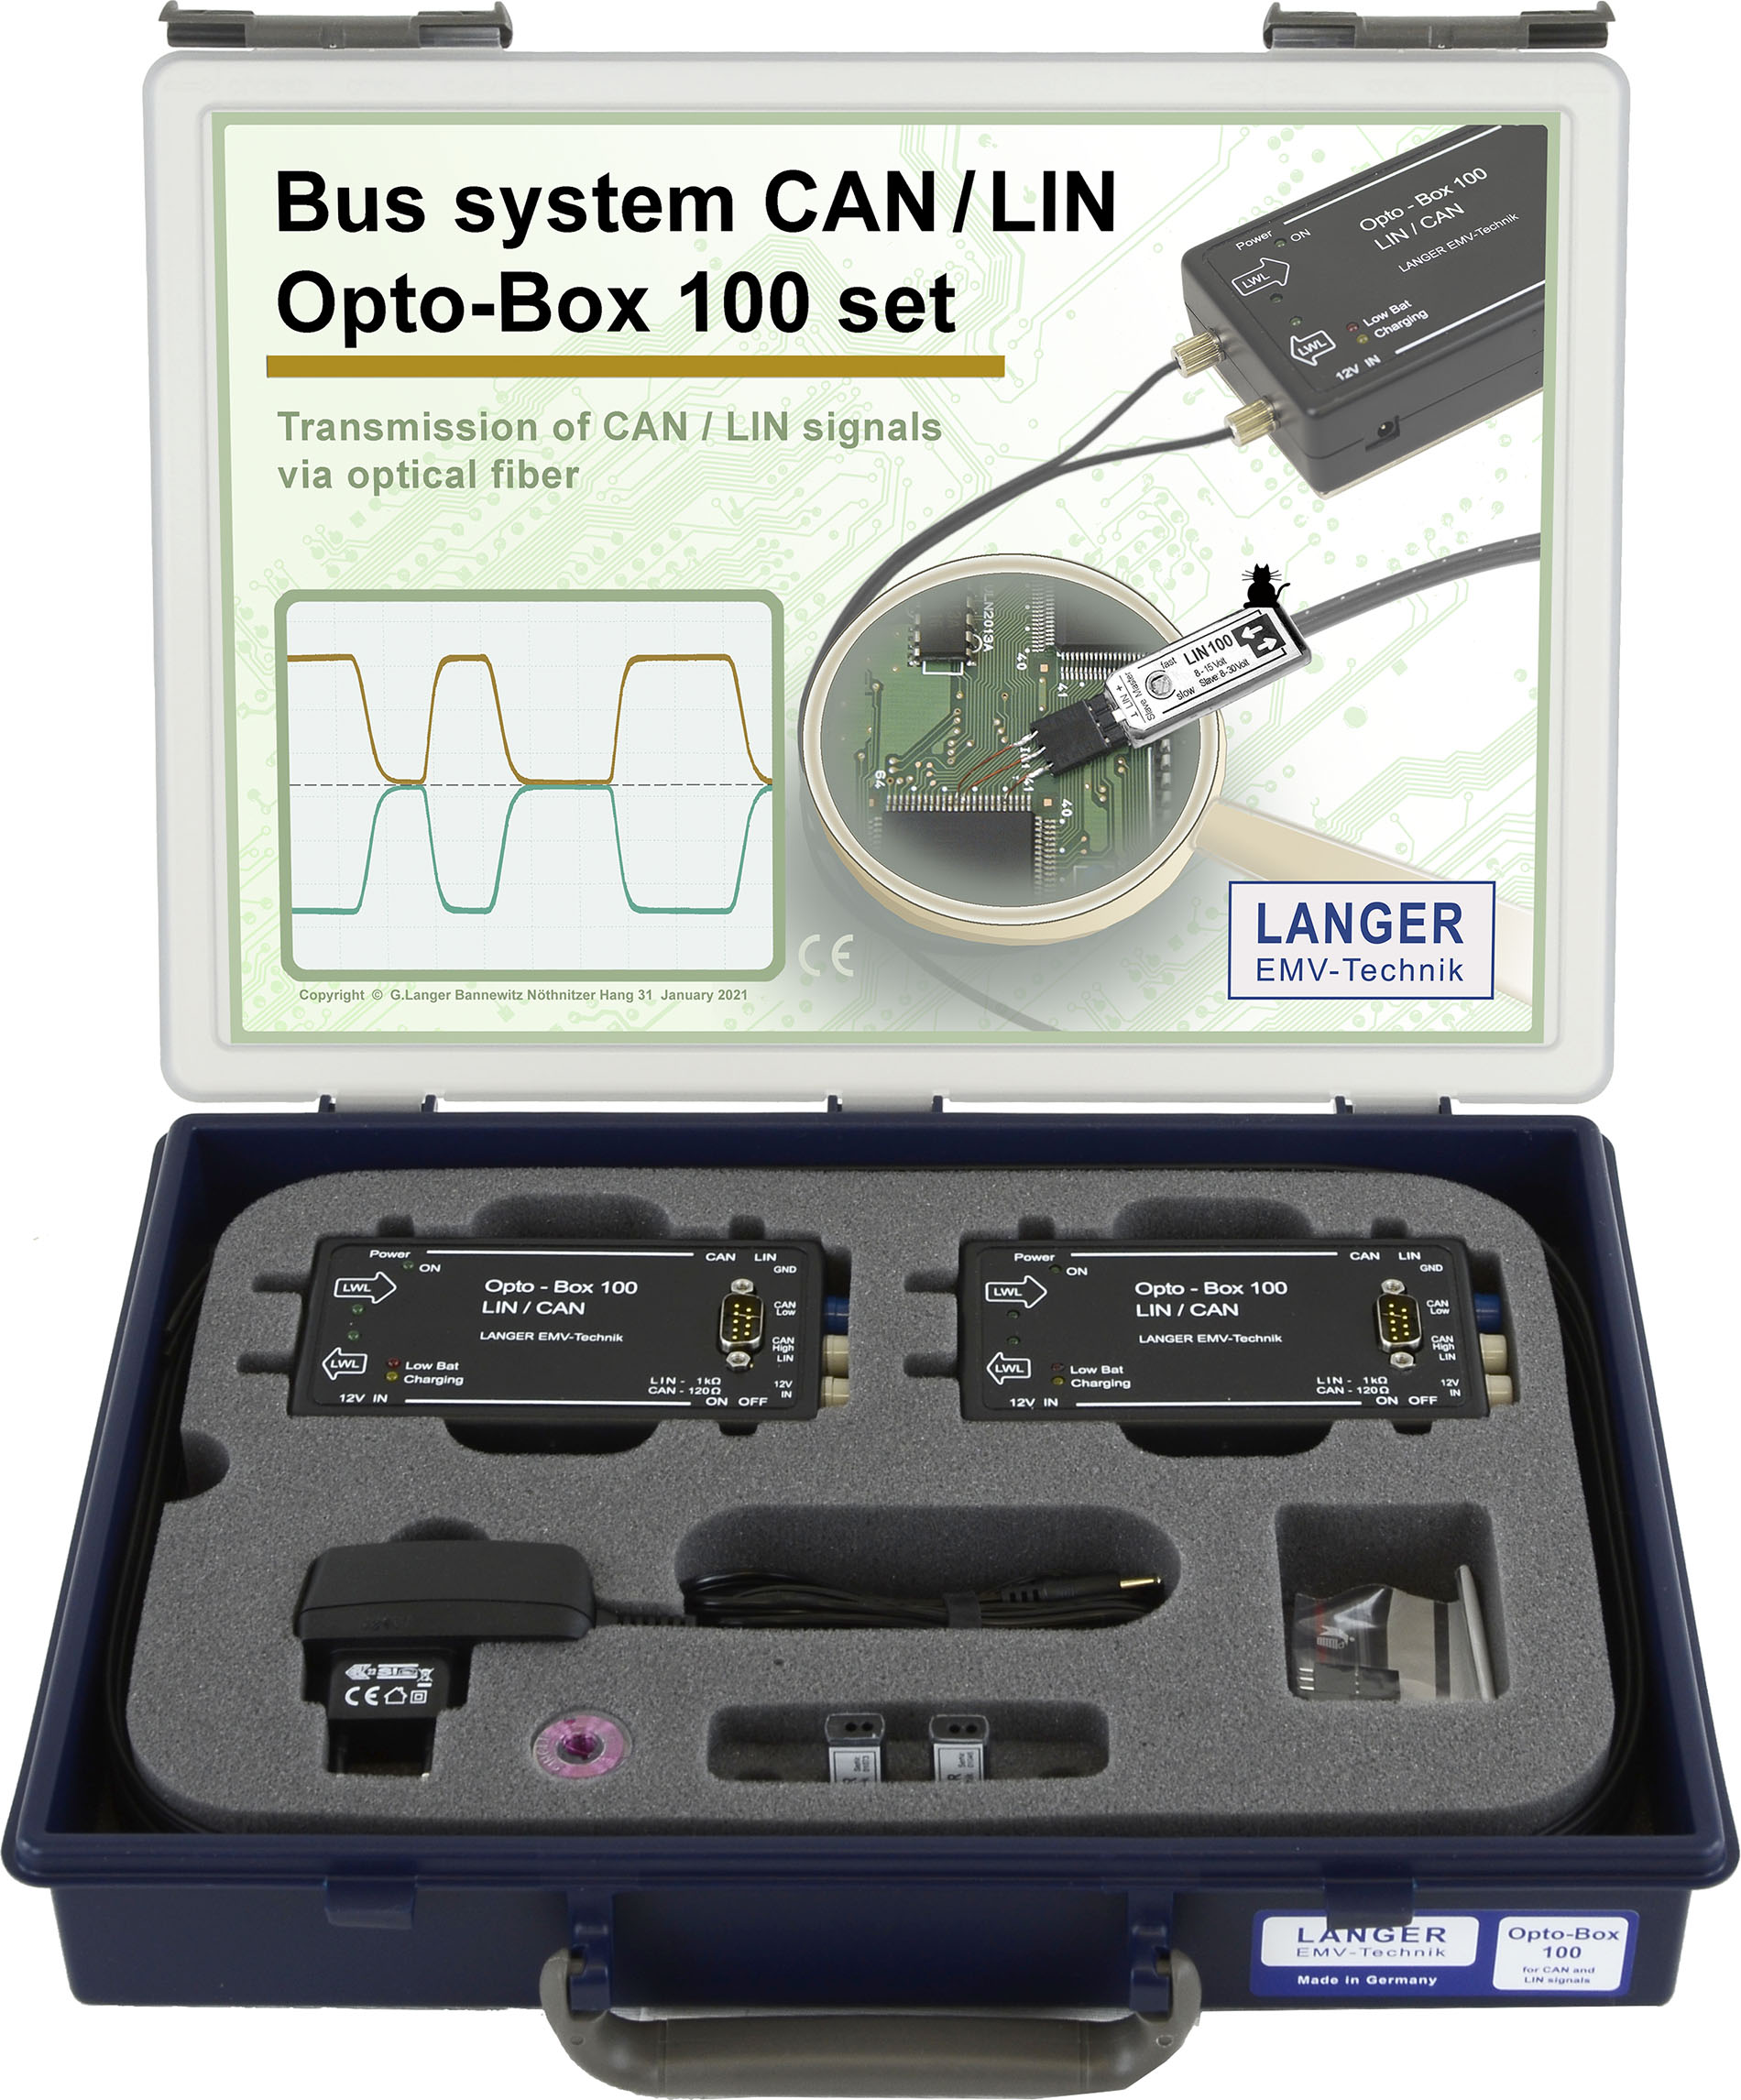 OB 100 set, Opto-Box 100 LIN and CAN